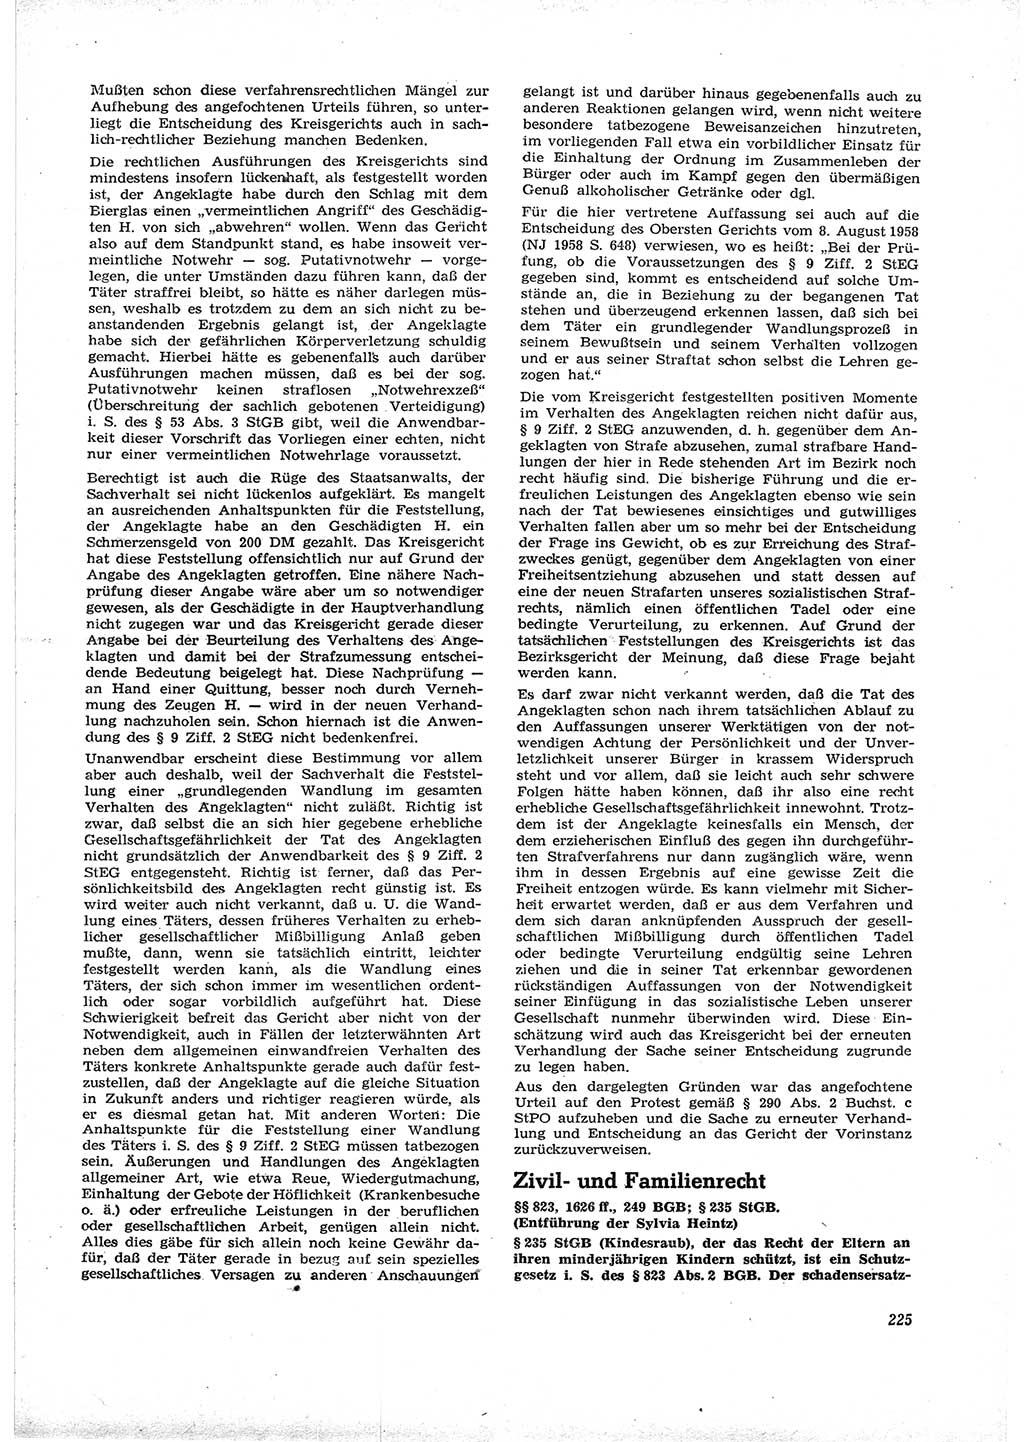 Neue Justiz (NJ), Zeitschrift für Recht und Rechtswissenschaft [Deutsche Demokratische Republik (DDR)], 16. Jahrgang 1962, Seite 225 (NJ DDR 1962, S. 225)